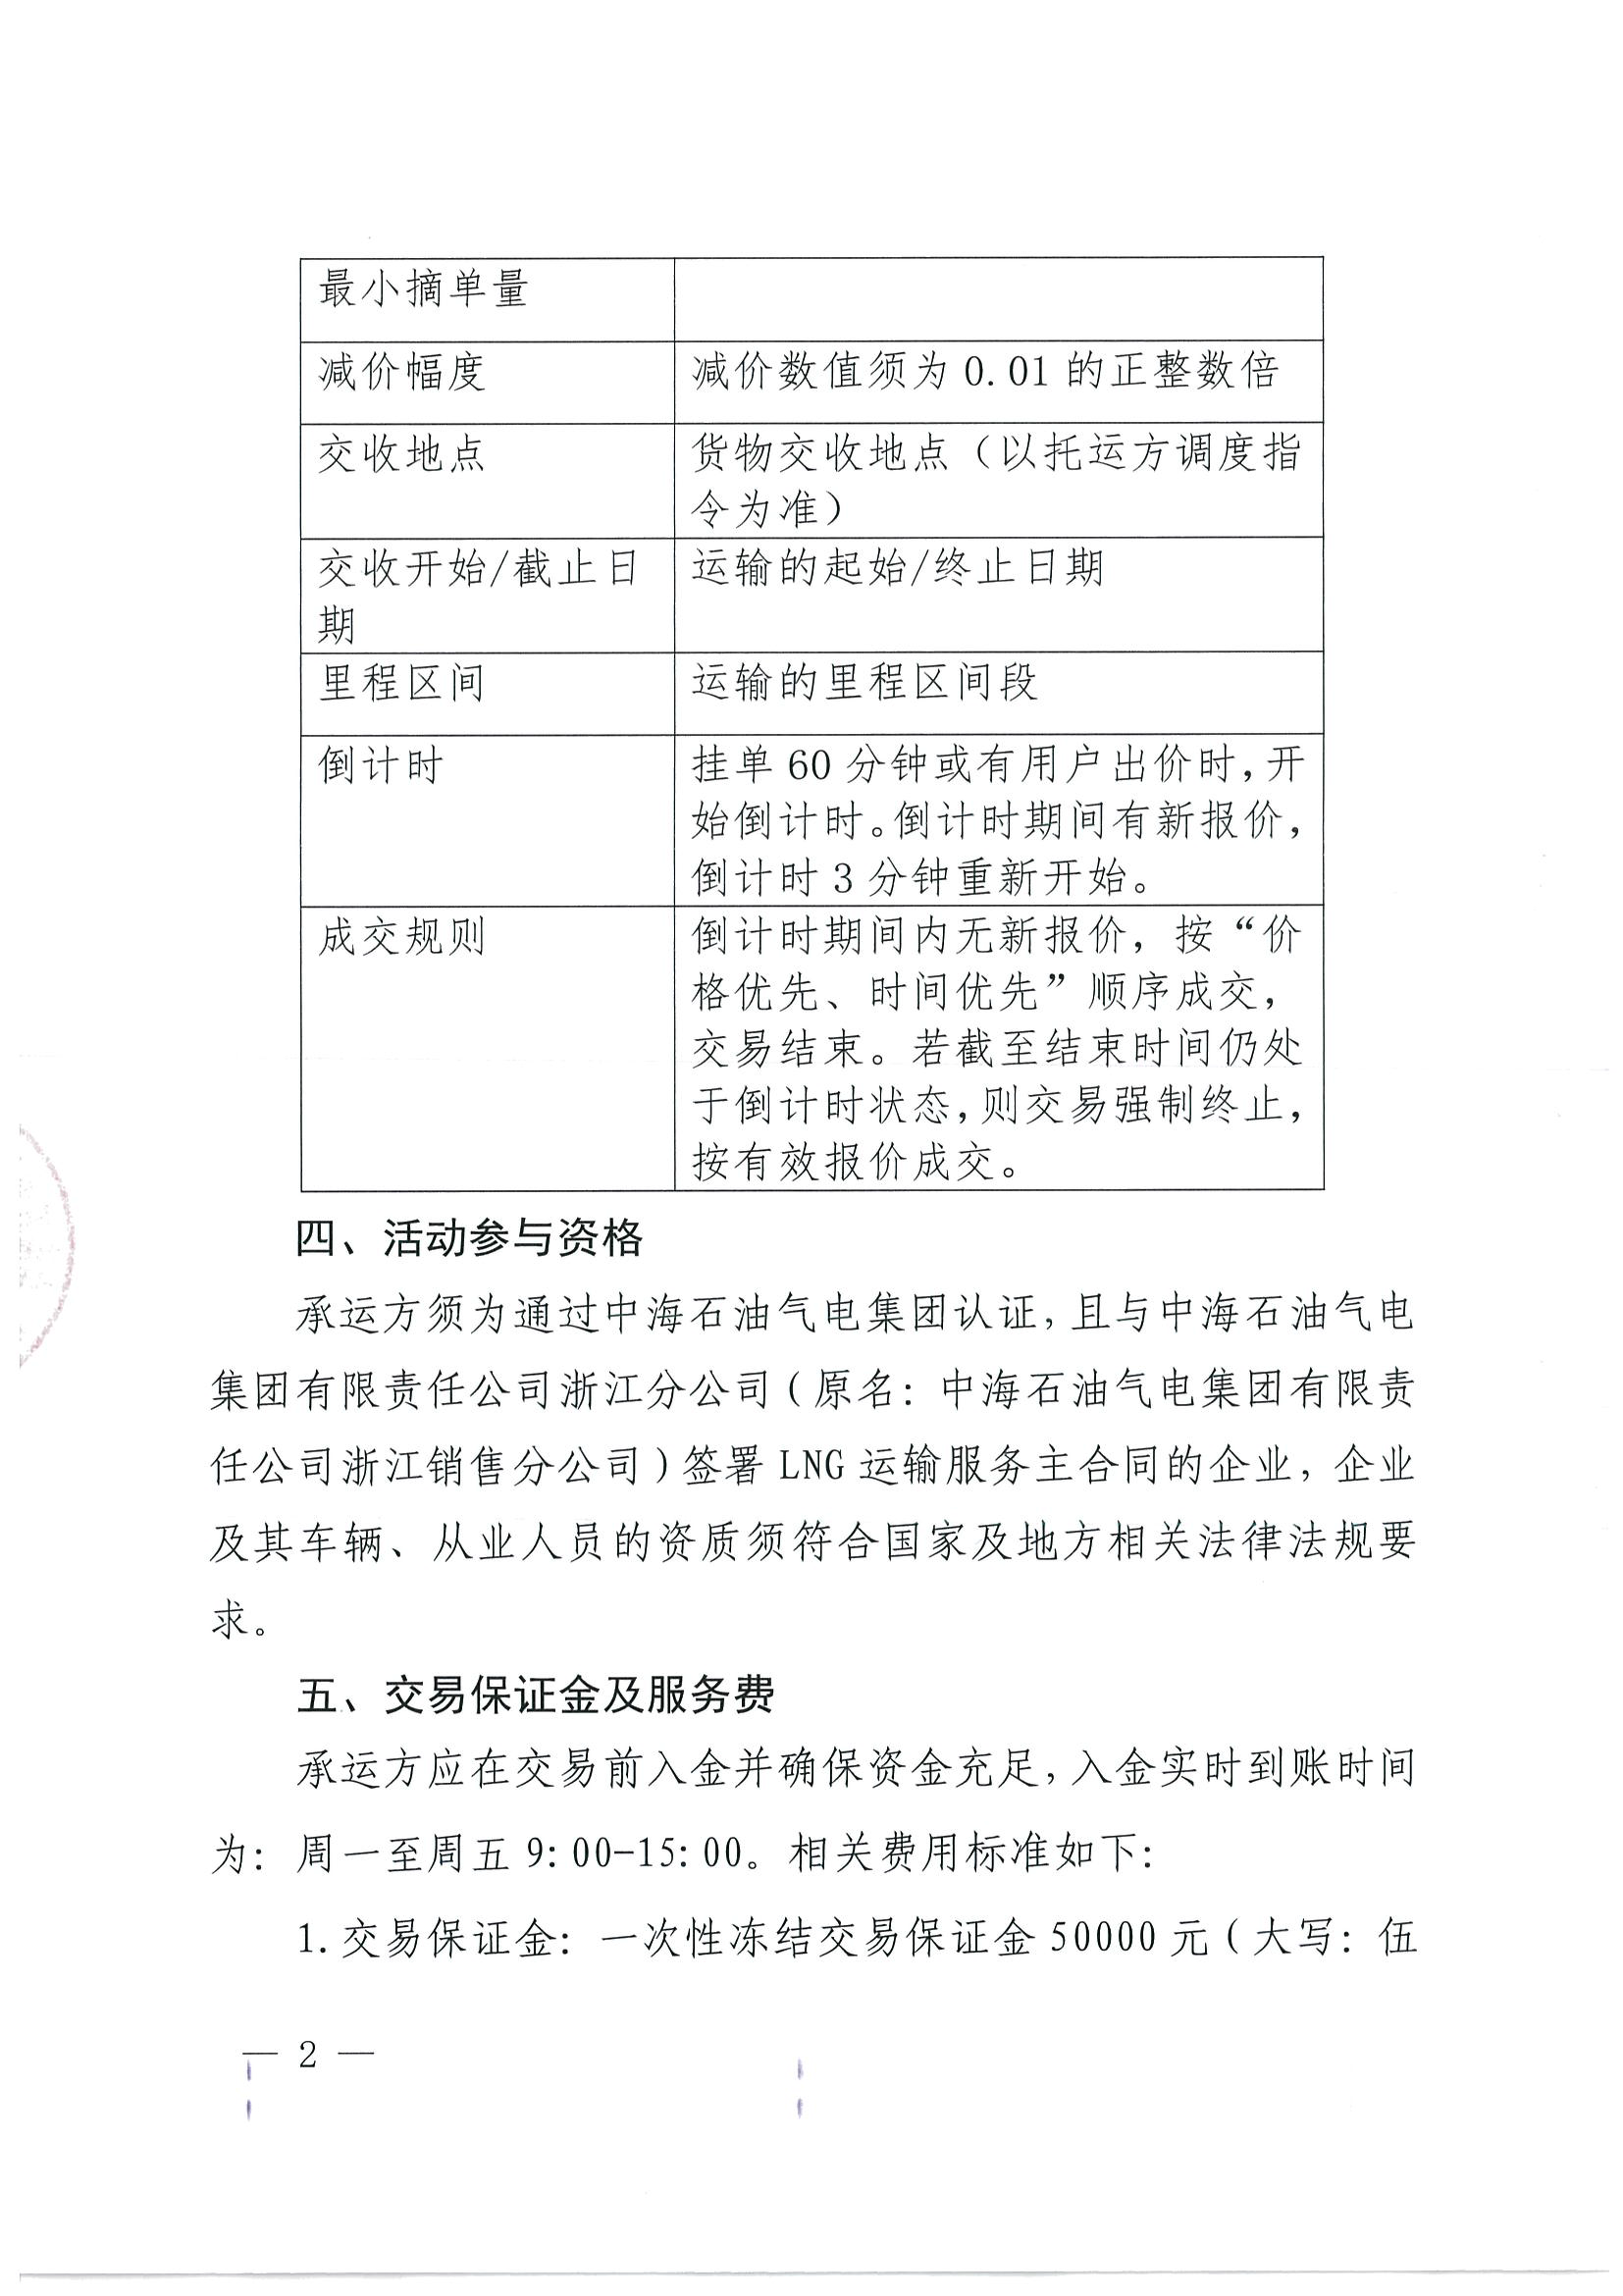 附件三：《中海石油气电集团浙江分公司关于开展运力竞价交易的公告》_页面_02.png